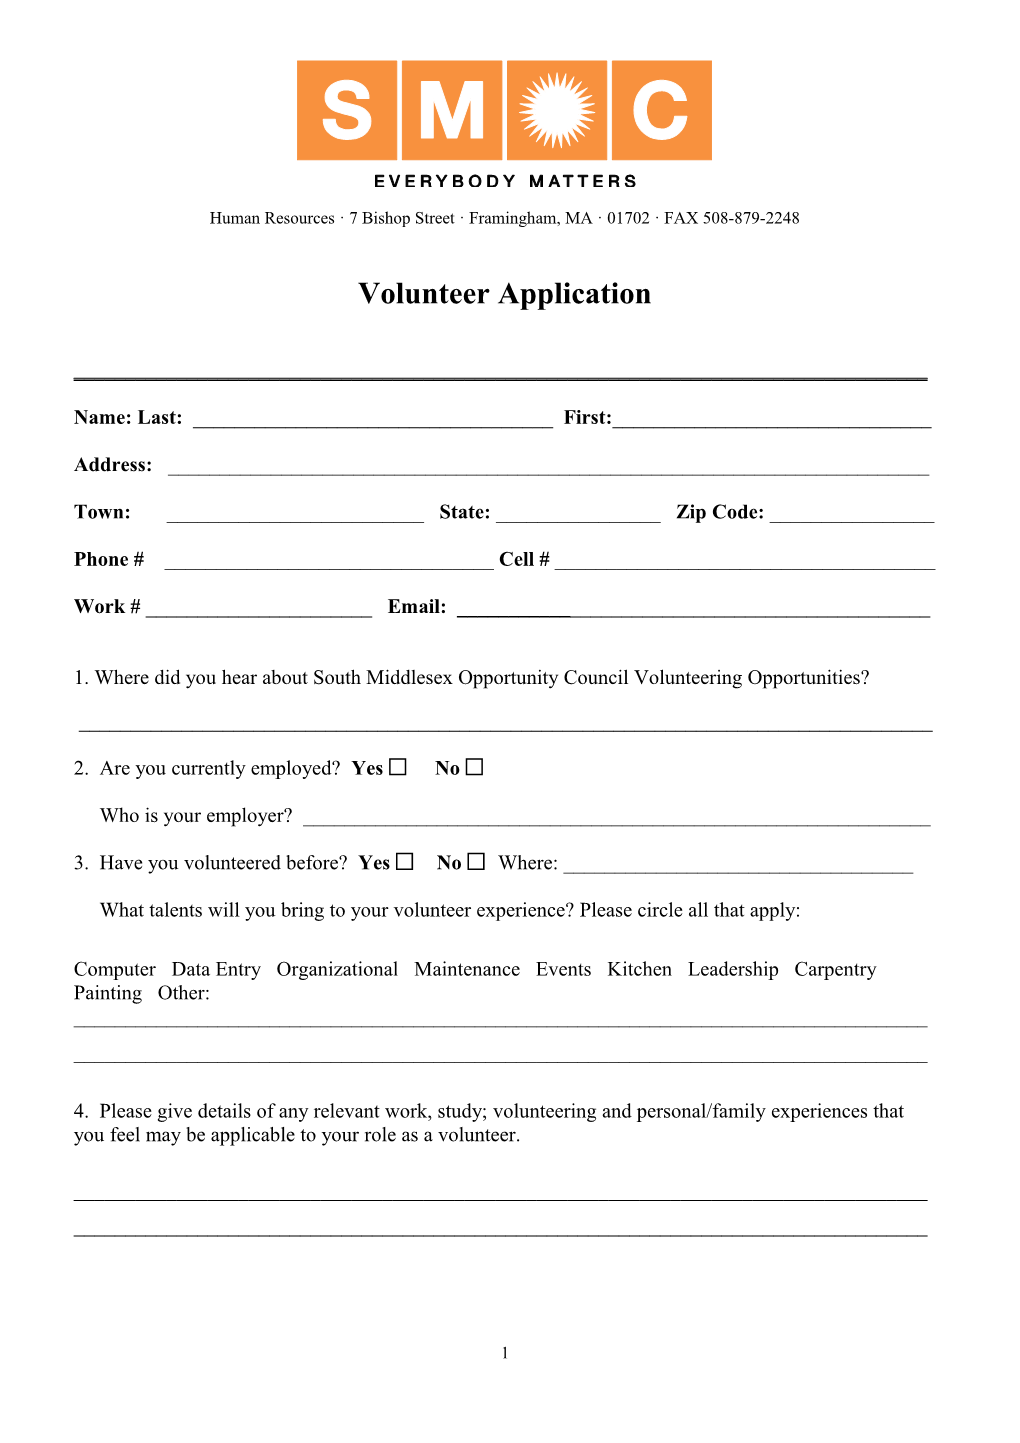 Draft Volunteer Application Form